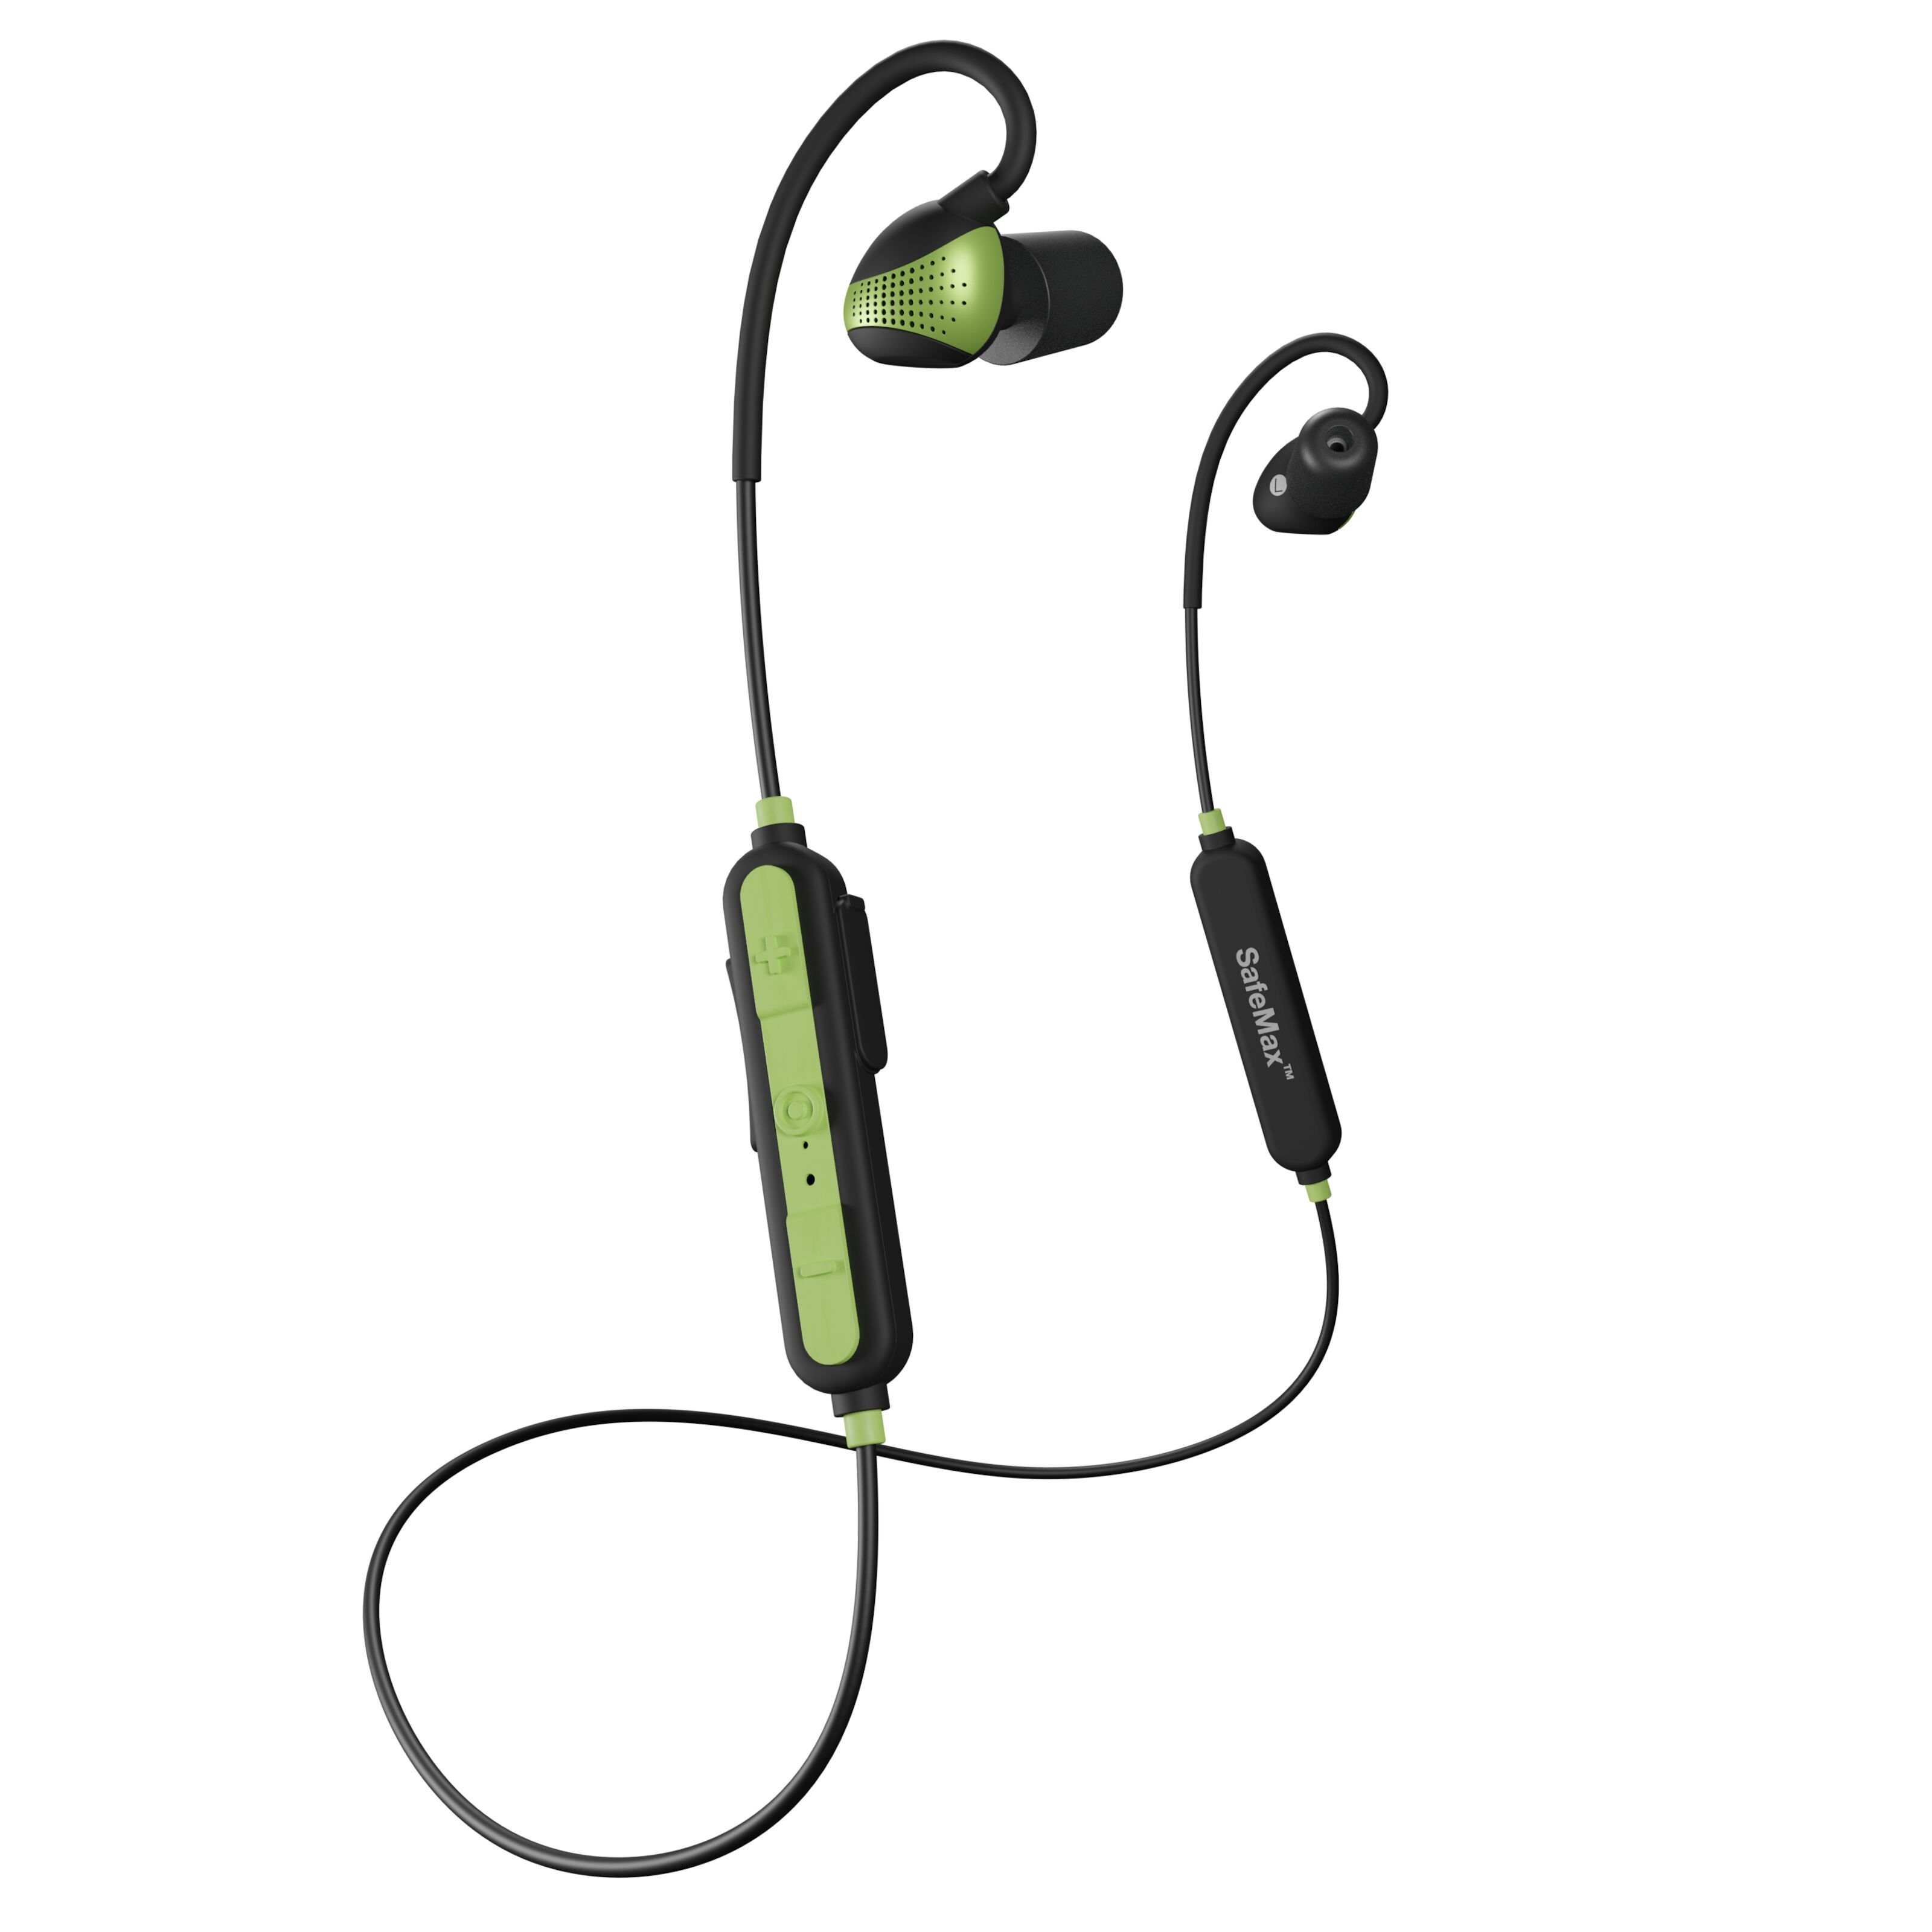 Sanfant V5.0 Trcuker Bluetooth Headset mit Rauschunterdrückung Bluetooth Headset mit Mikrofon kabelloses Auto-Headset für Handy/PC/Skype 18 Stunden Sprechzeit Headset mit Standladestation 